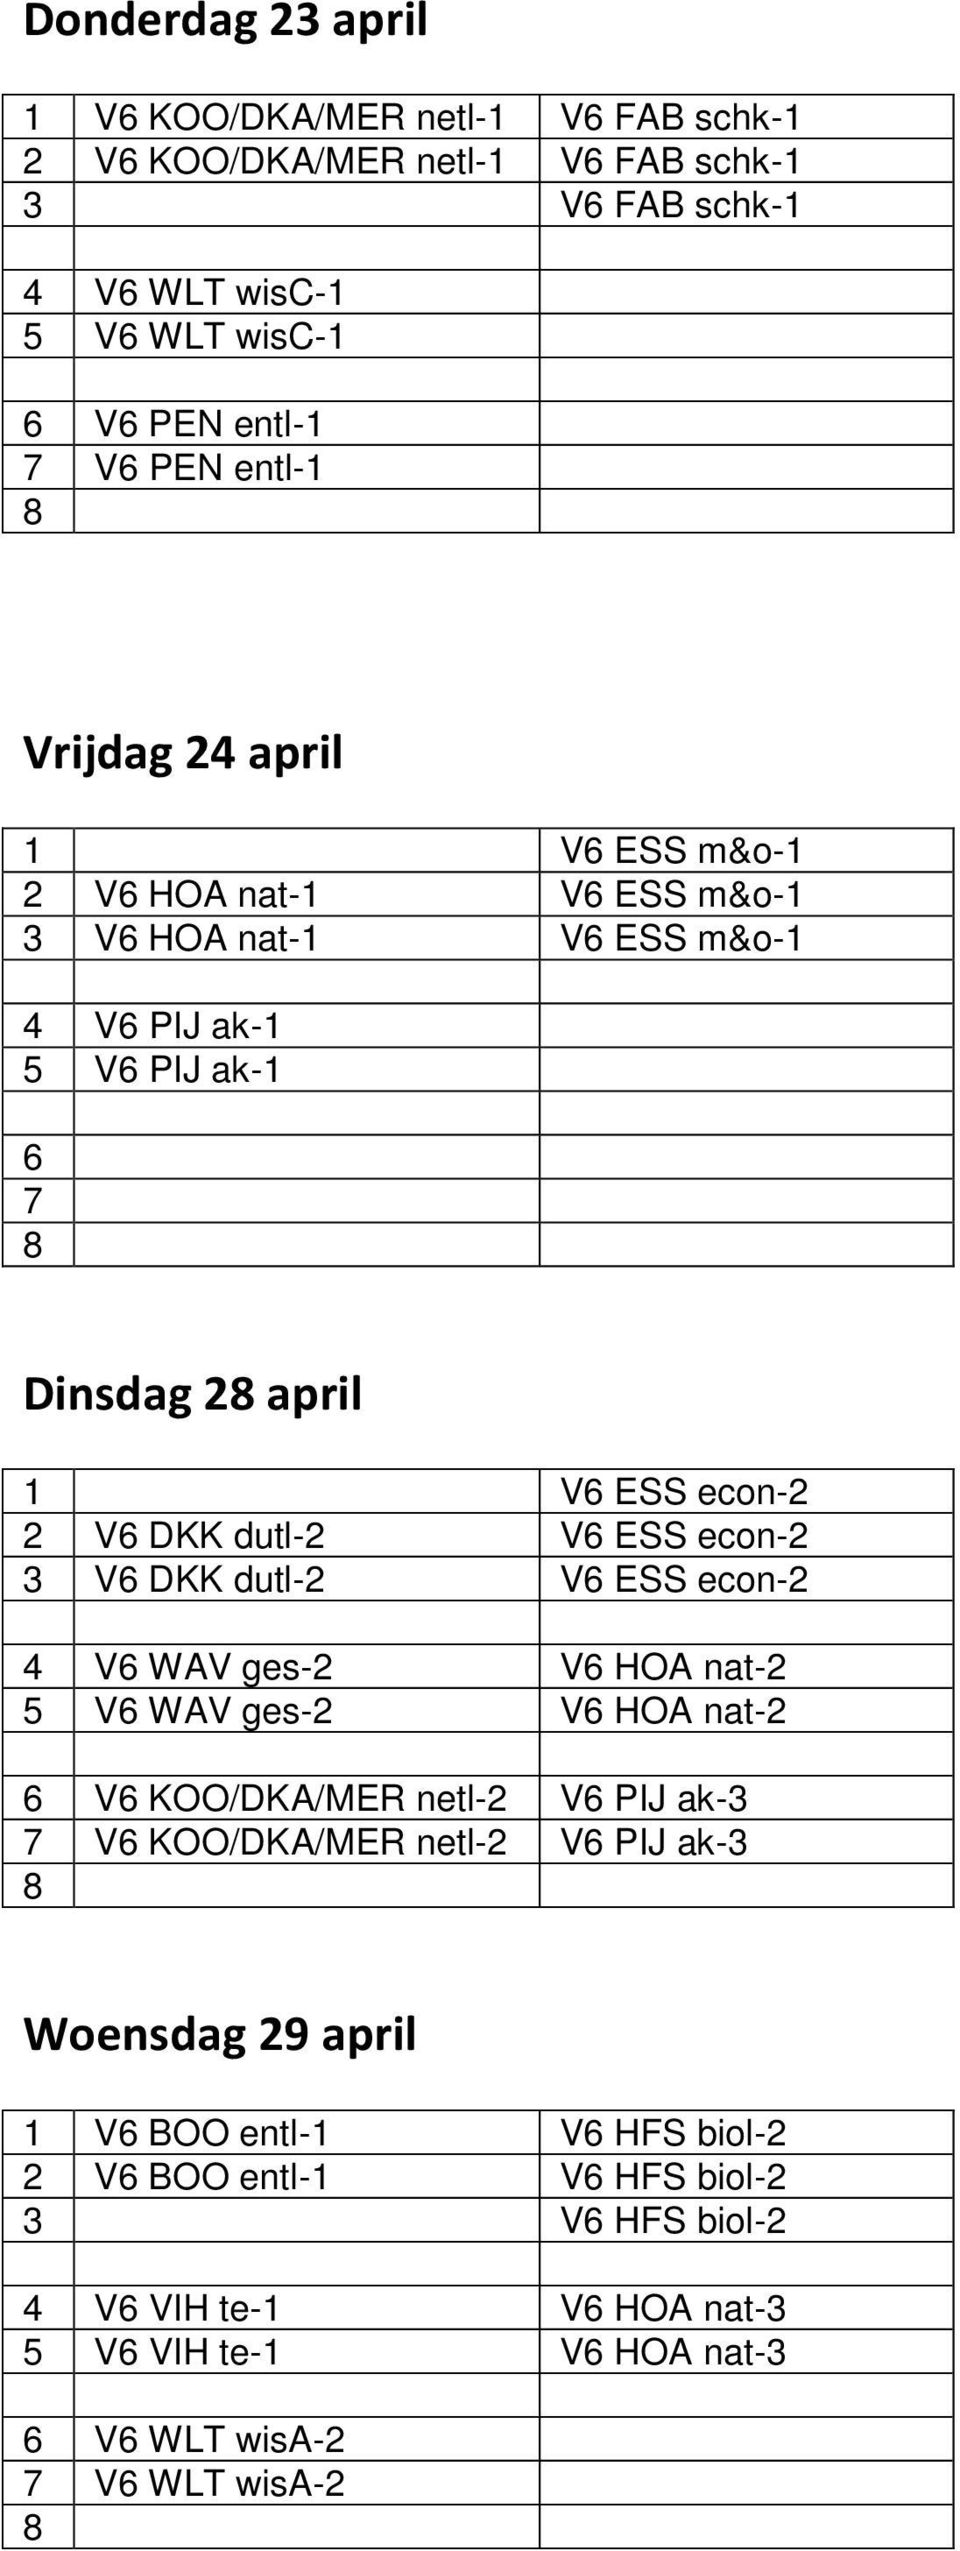 ESS econ-2 3 V6 DKK dutl-2 V6 ESS econ-2 4 V6 WAV ges-2 V6 HOA nat-2 5 V6 WAV ges-2 V6 HOA nat-2 6 V6 KOO/DKA/MER netl-2 V6 PIJ ak-3 7 V6 KOO/DKA/MER netl-2 V6 PIJ ak-3 8